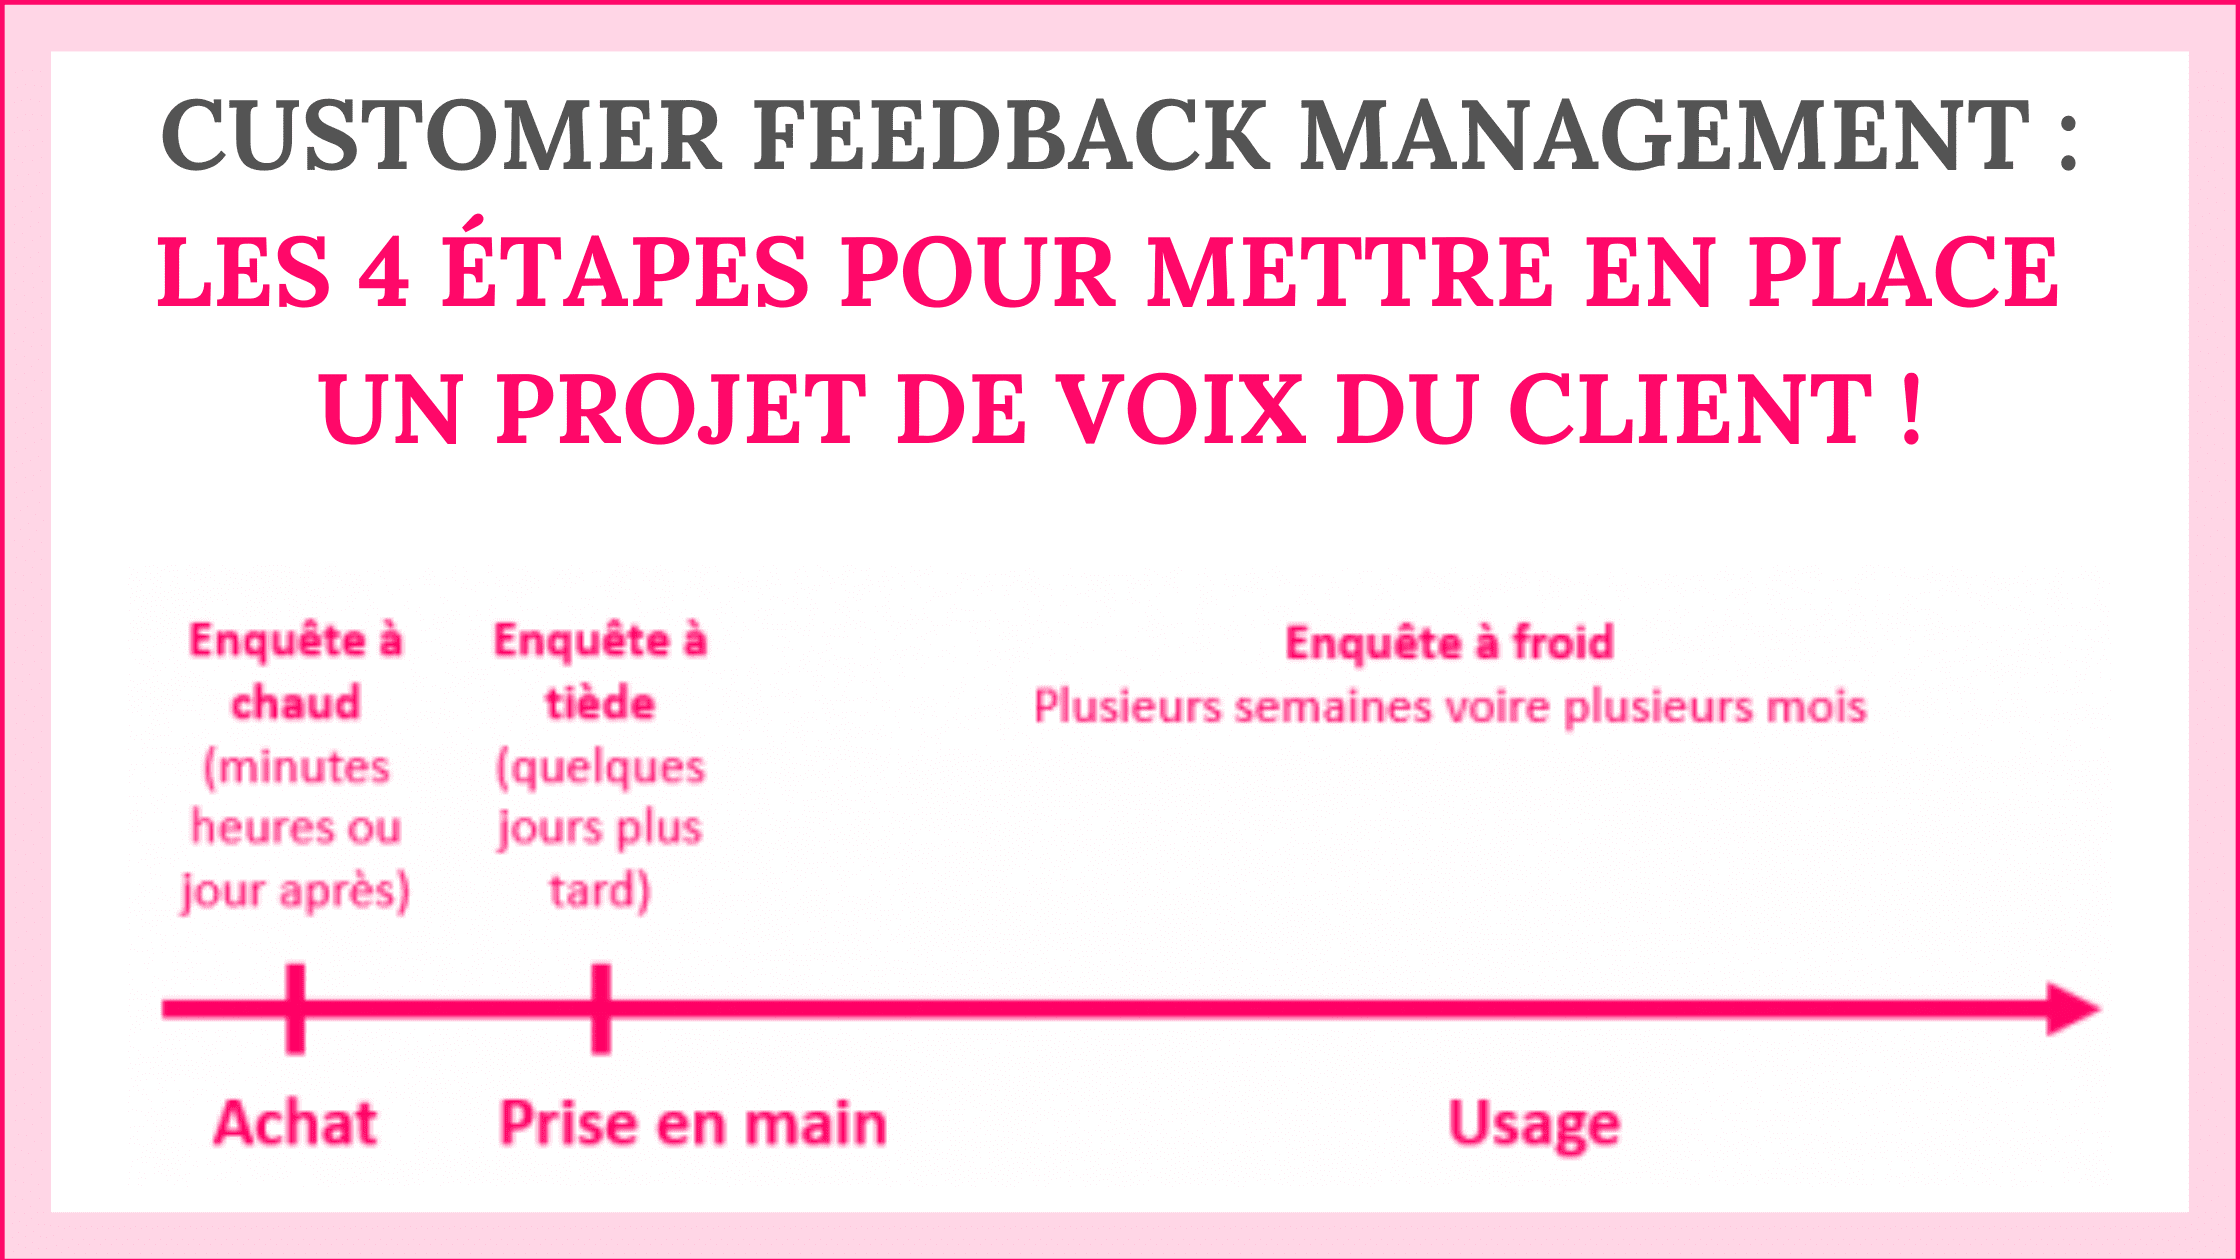 Customer Feedback Management : les 4 étapes pour mettre en place un projet de Voix du Client ! 4